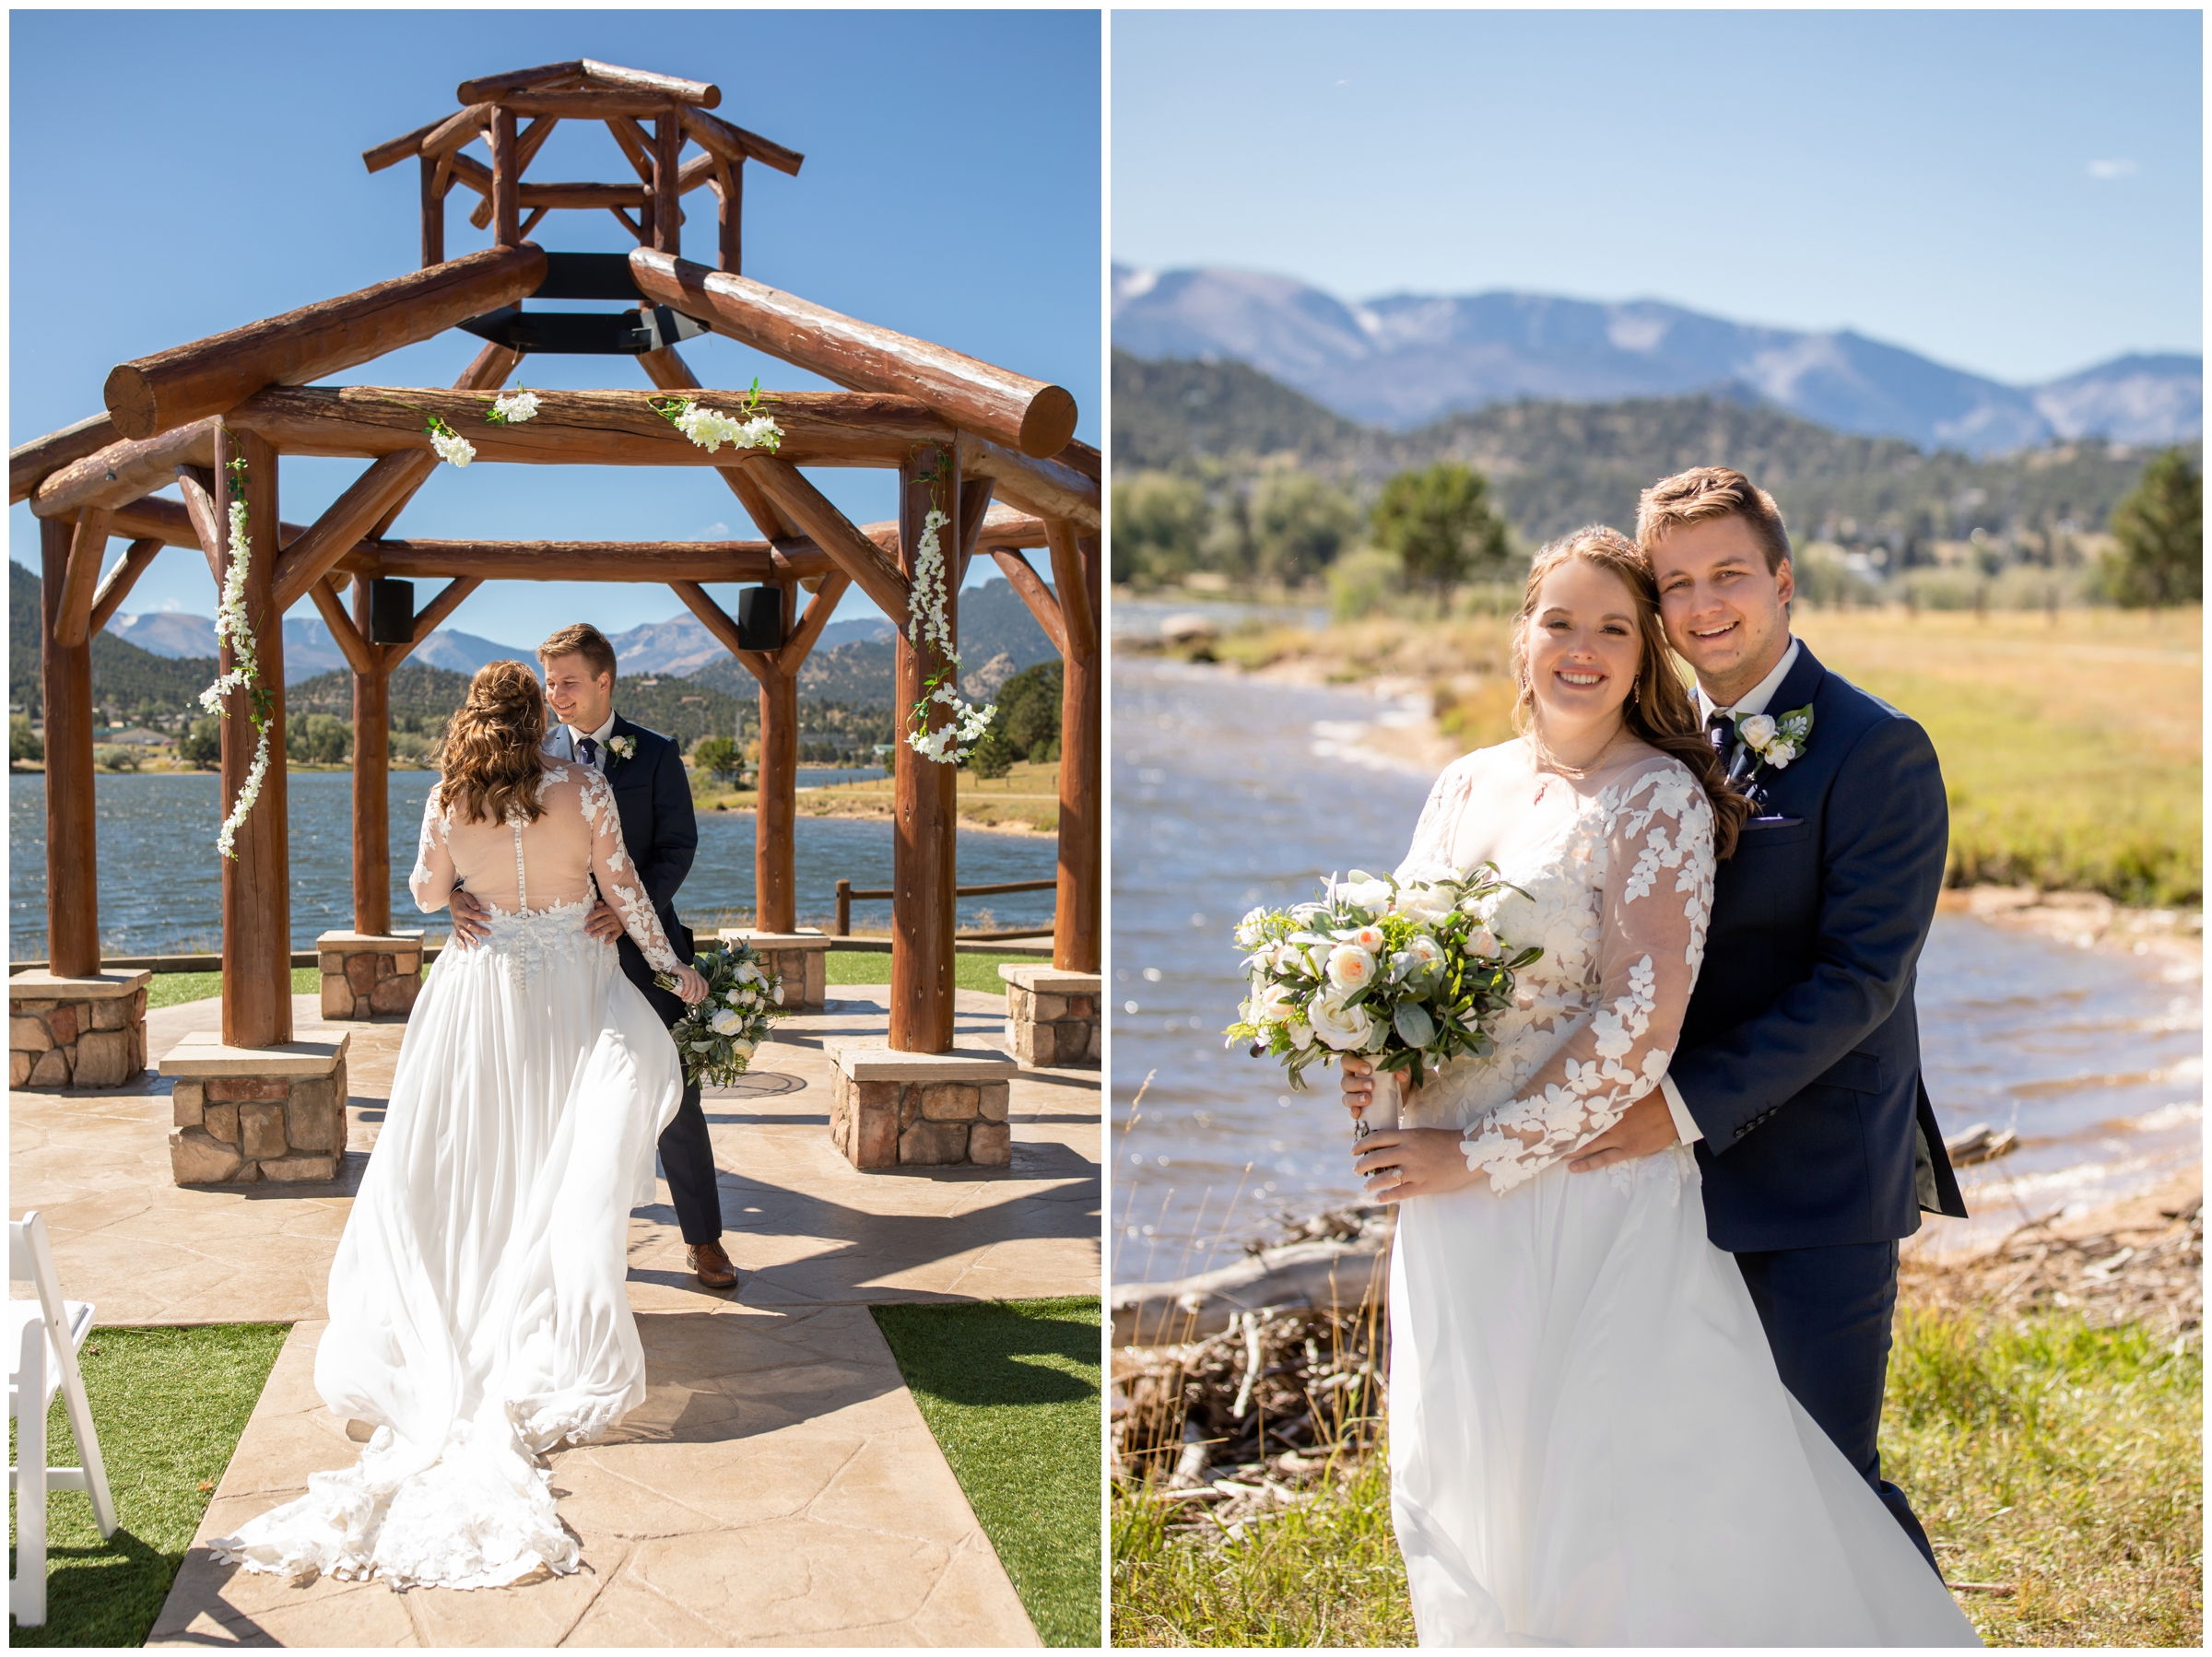 Estes Park Resort wedding photos during fall by Colorado mountain photographer Plum Pretty Photography